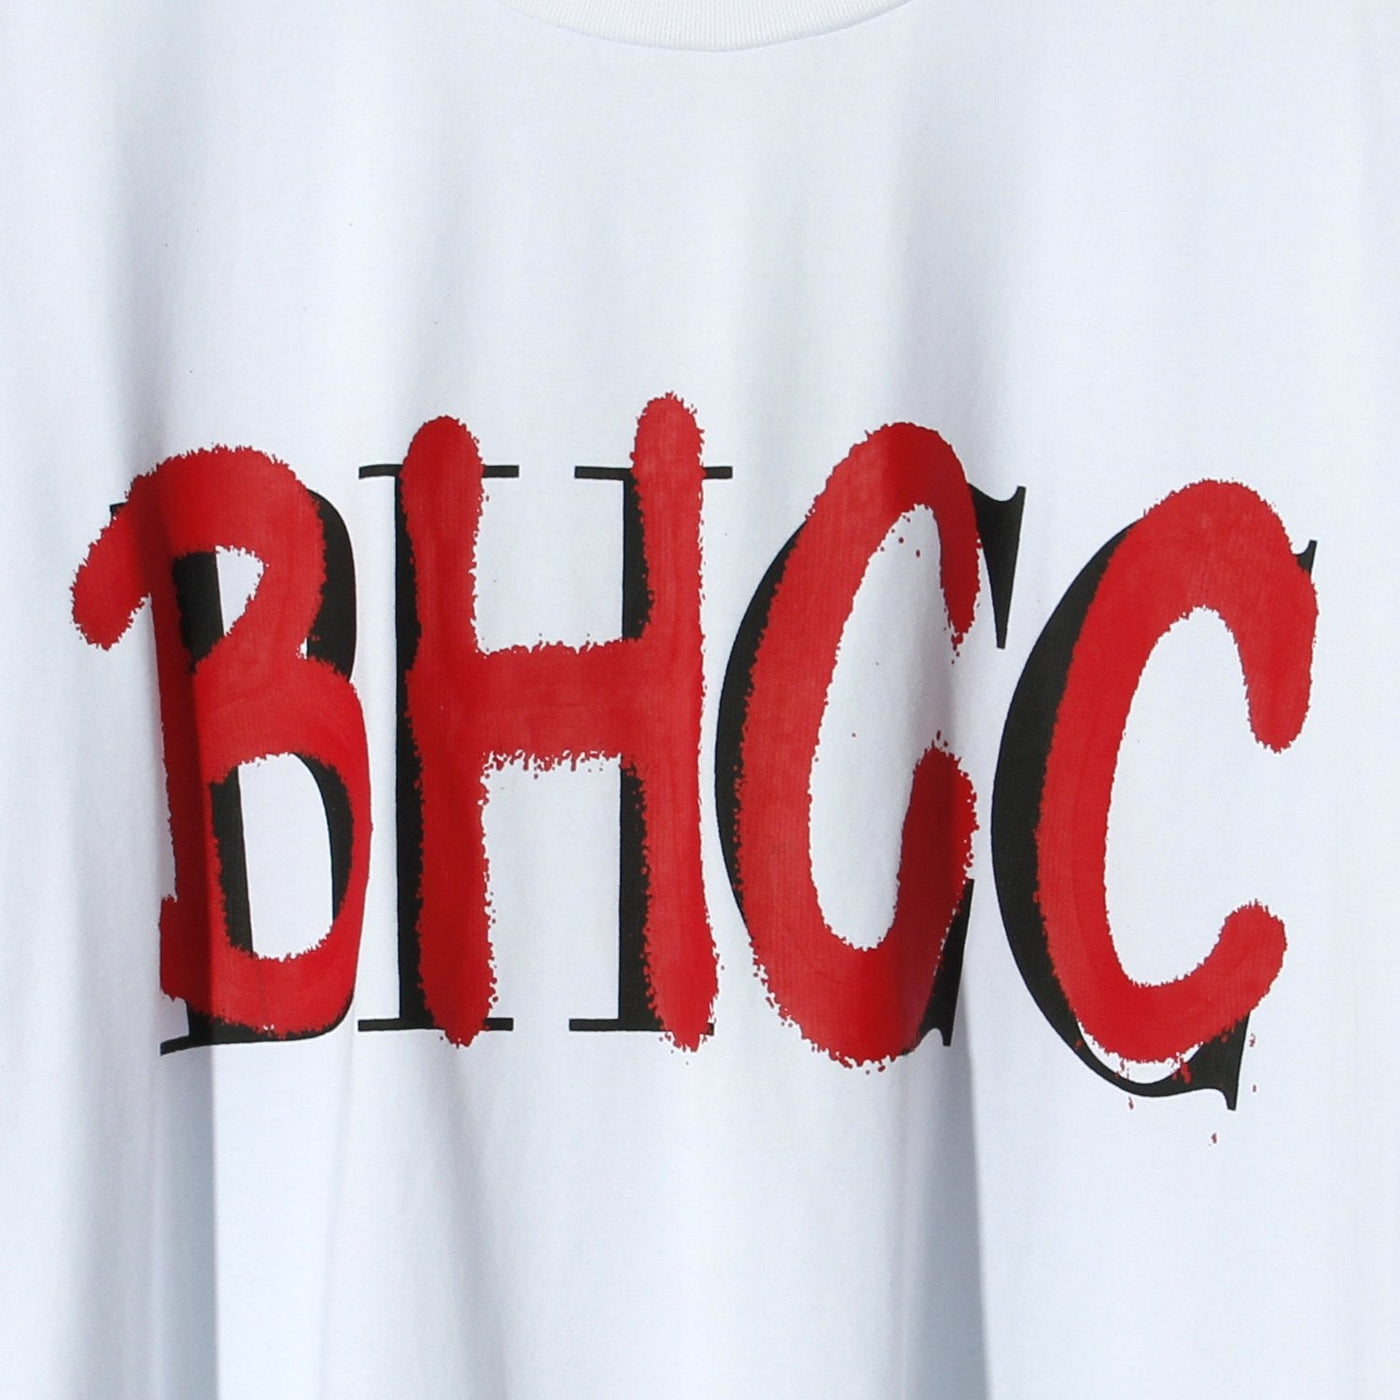 B.H.C.C Layered Logo Tee / WHITE